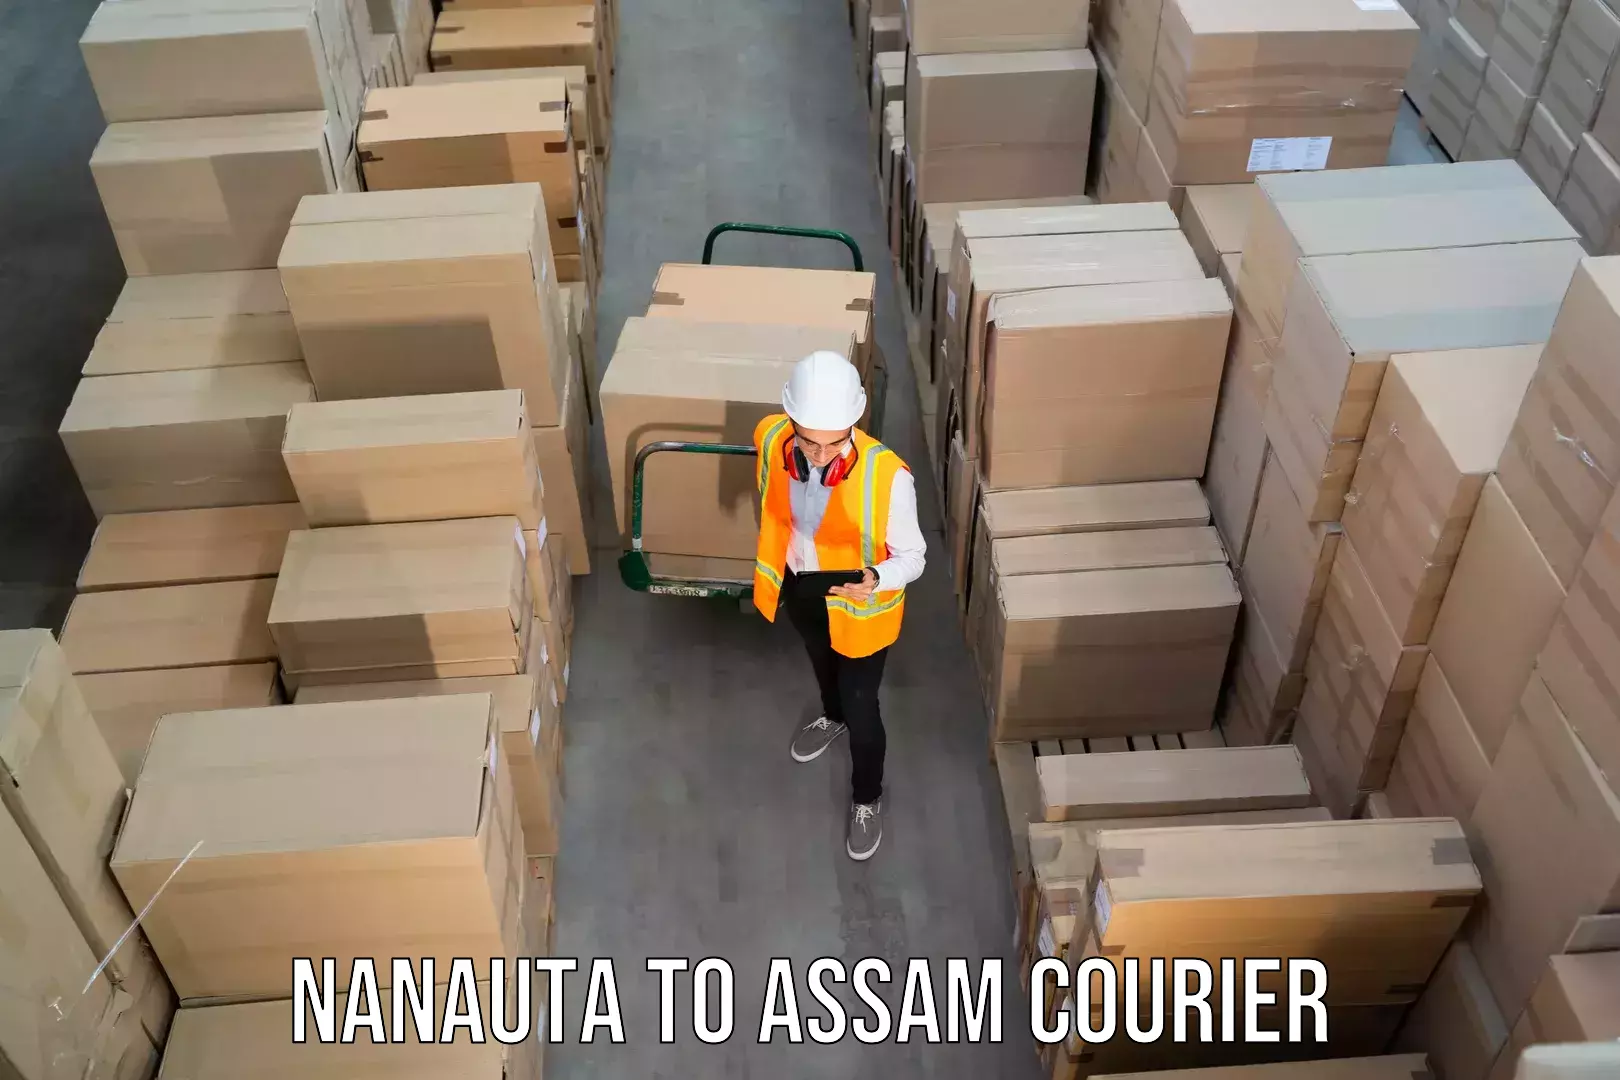 Courier service comparison Nanauta to Amoni